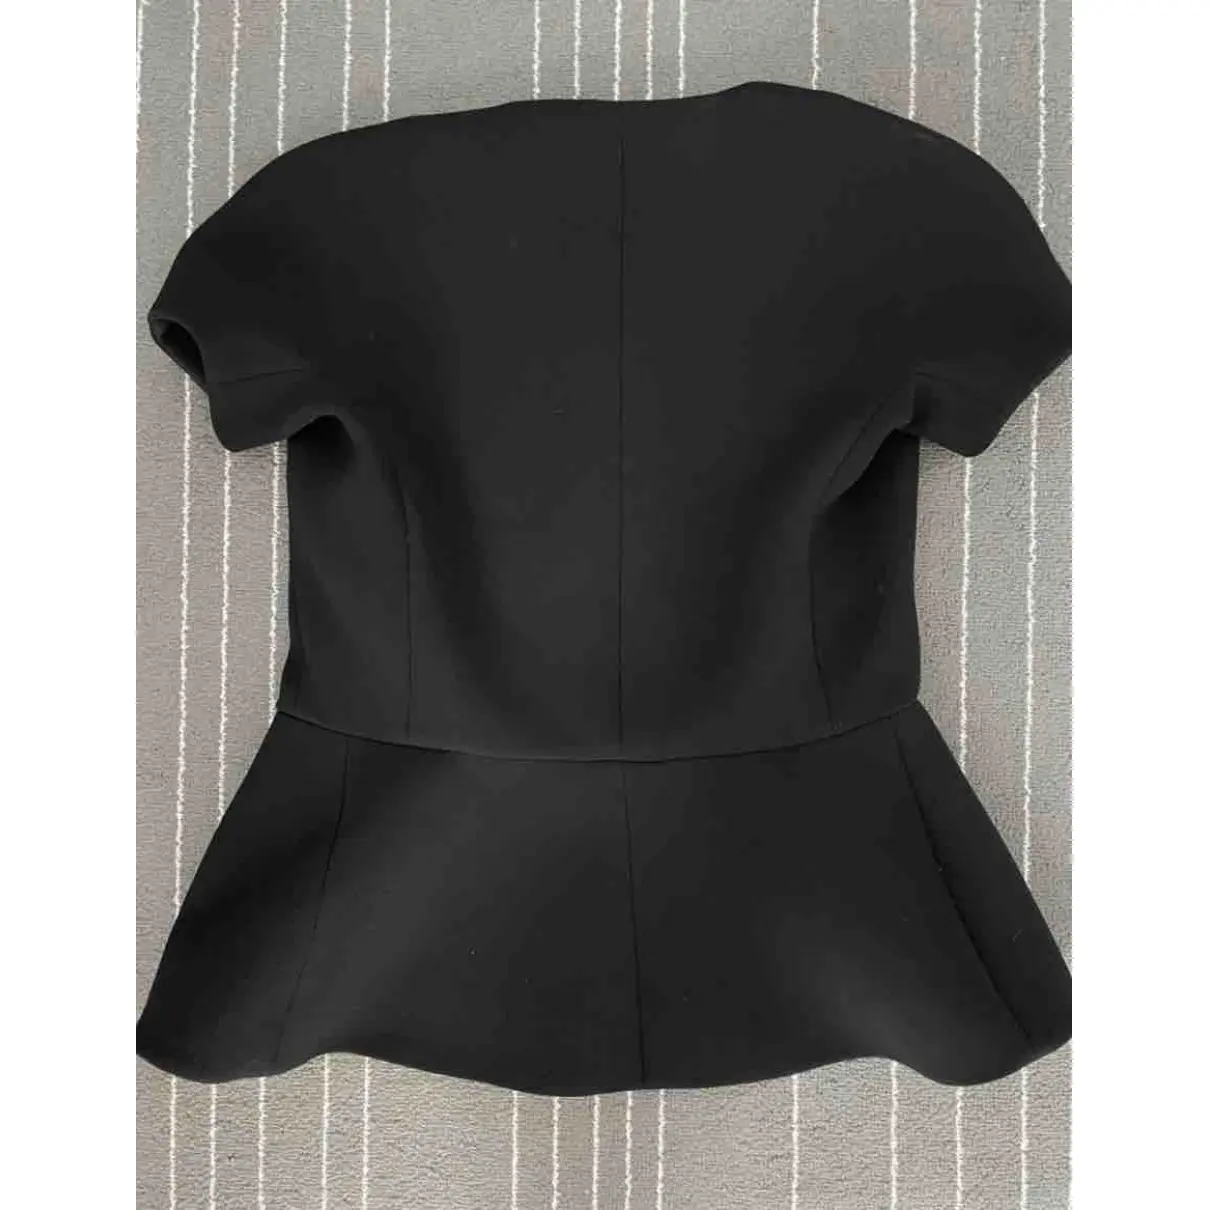 Buy Balenciaga Black Polyester Top online